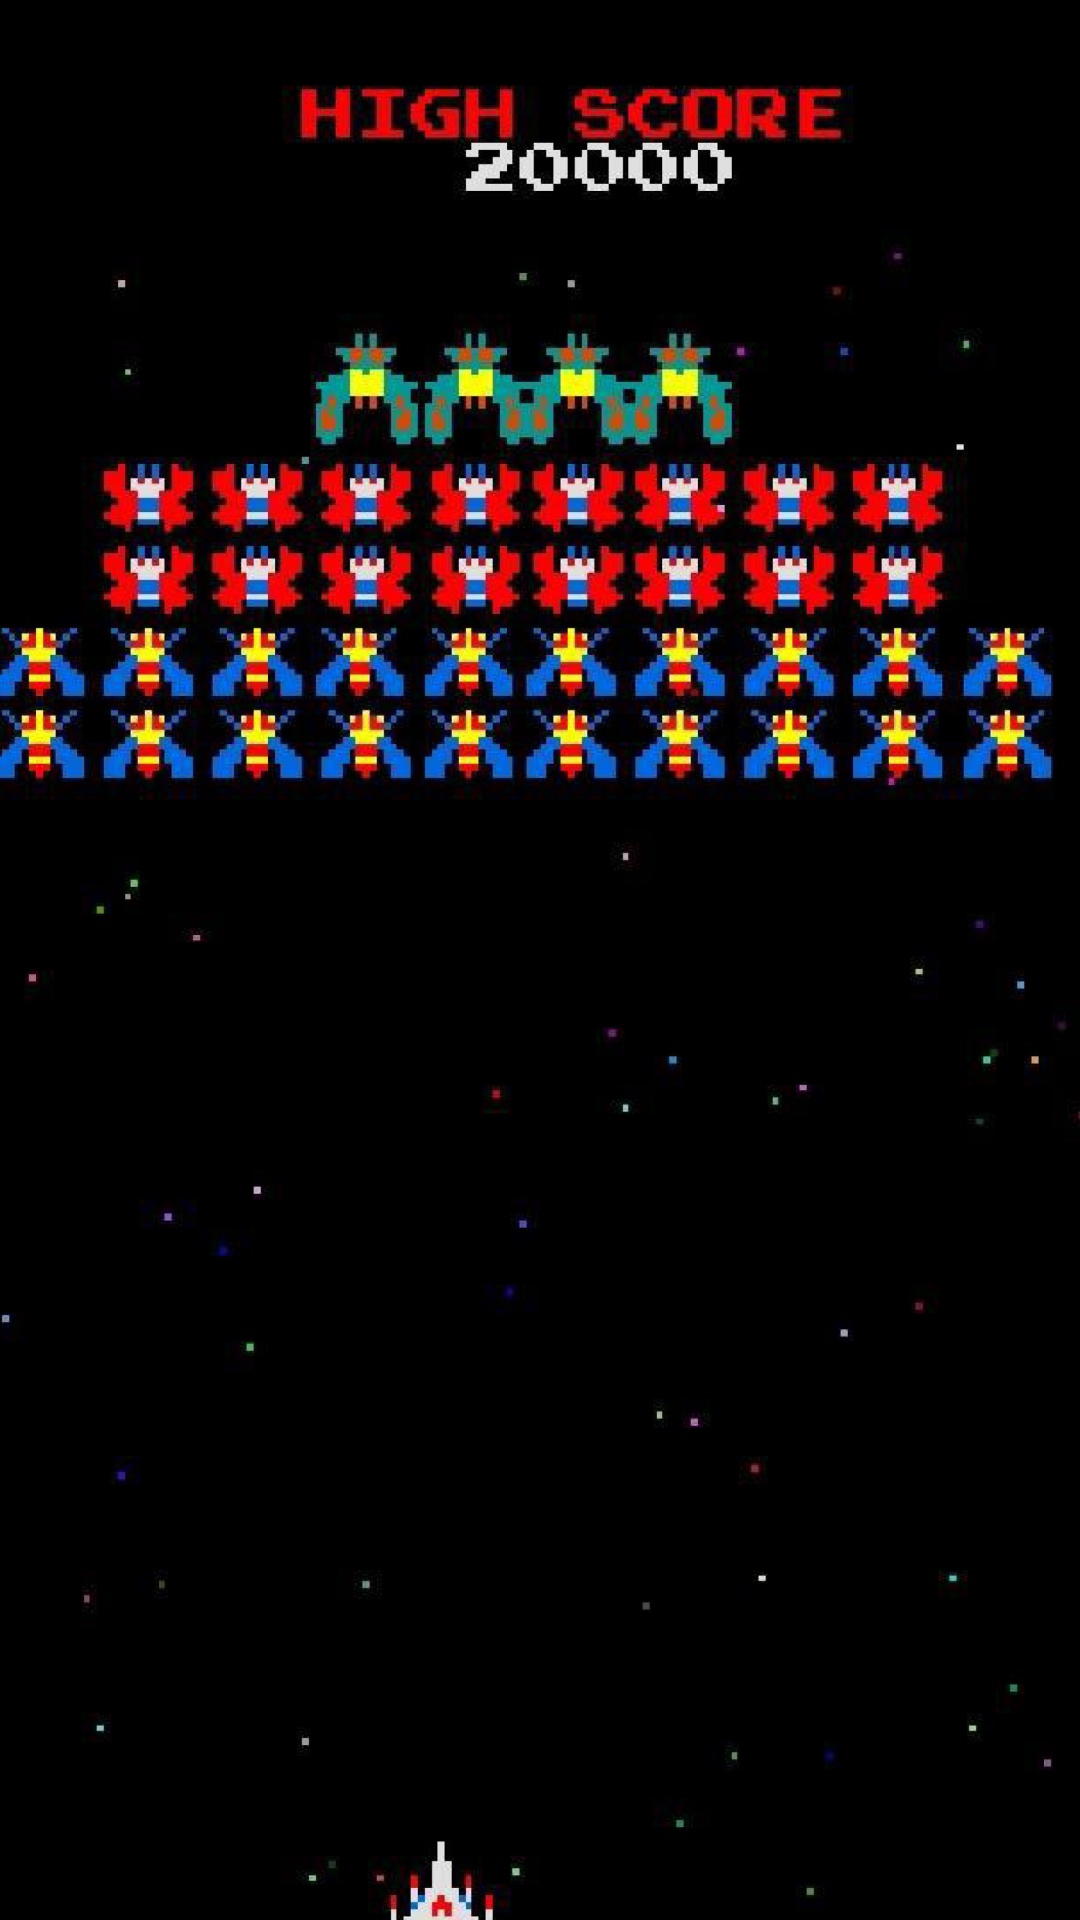 Galaxian Galaga Nintendo Arcade Game screenshot #1 1080x1920